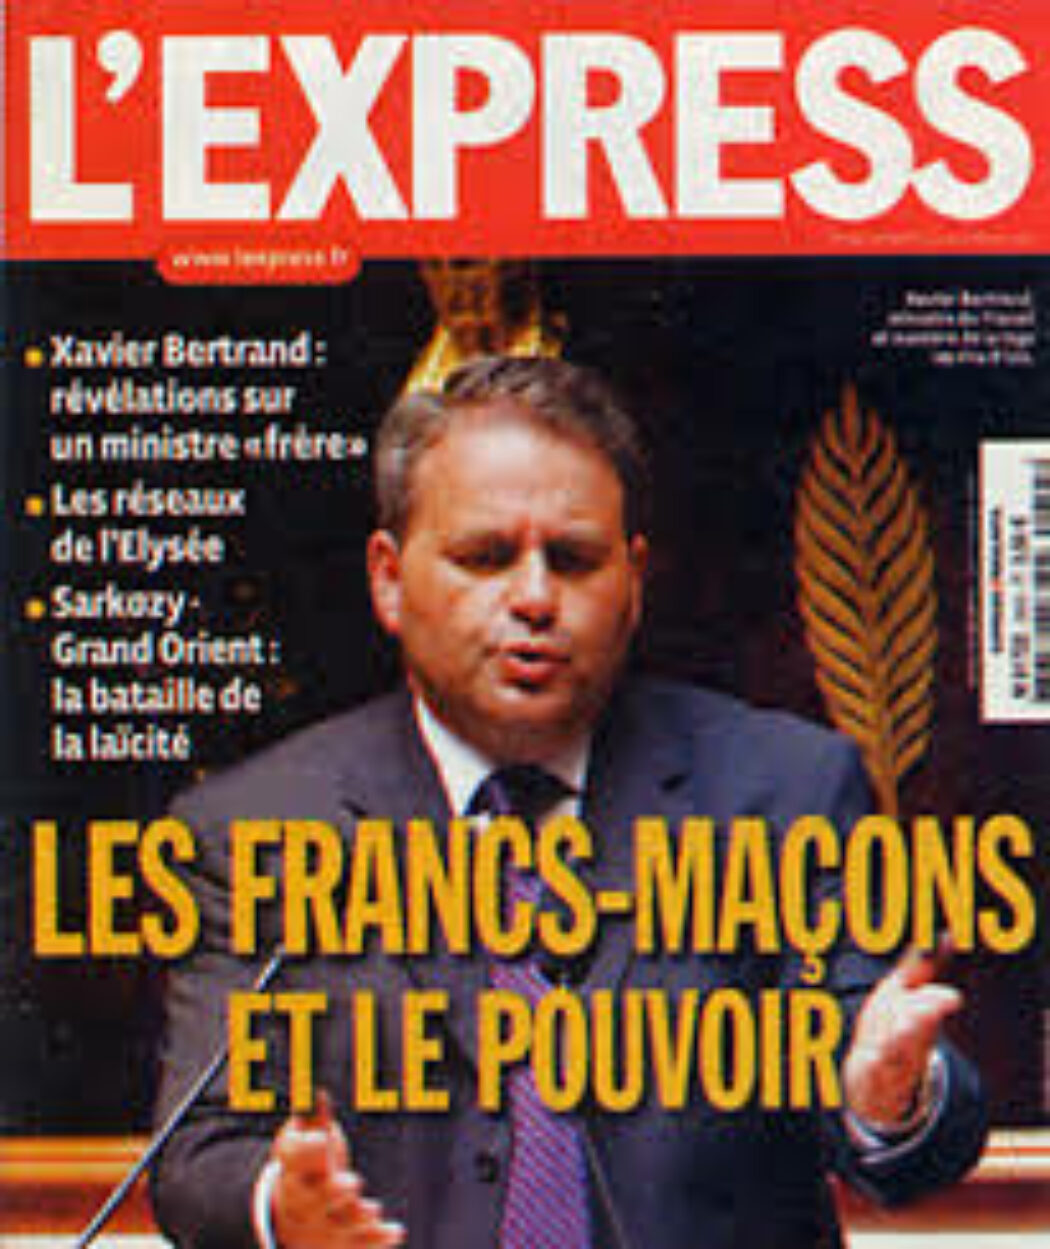 Xavier Bertrand, franc-maçon de 1995 à 2015 (?), candidat à la présidentielle de 2022